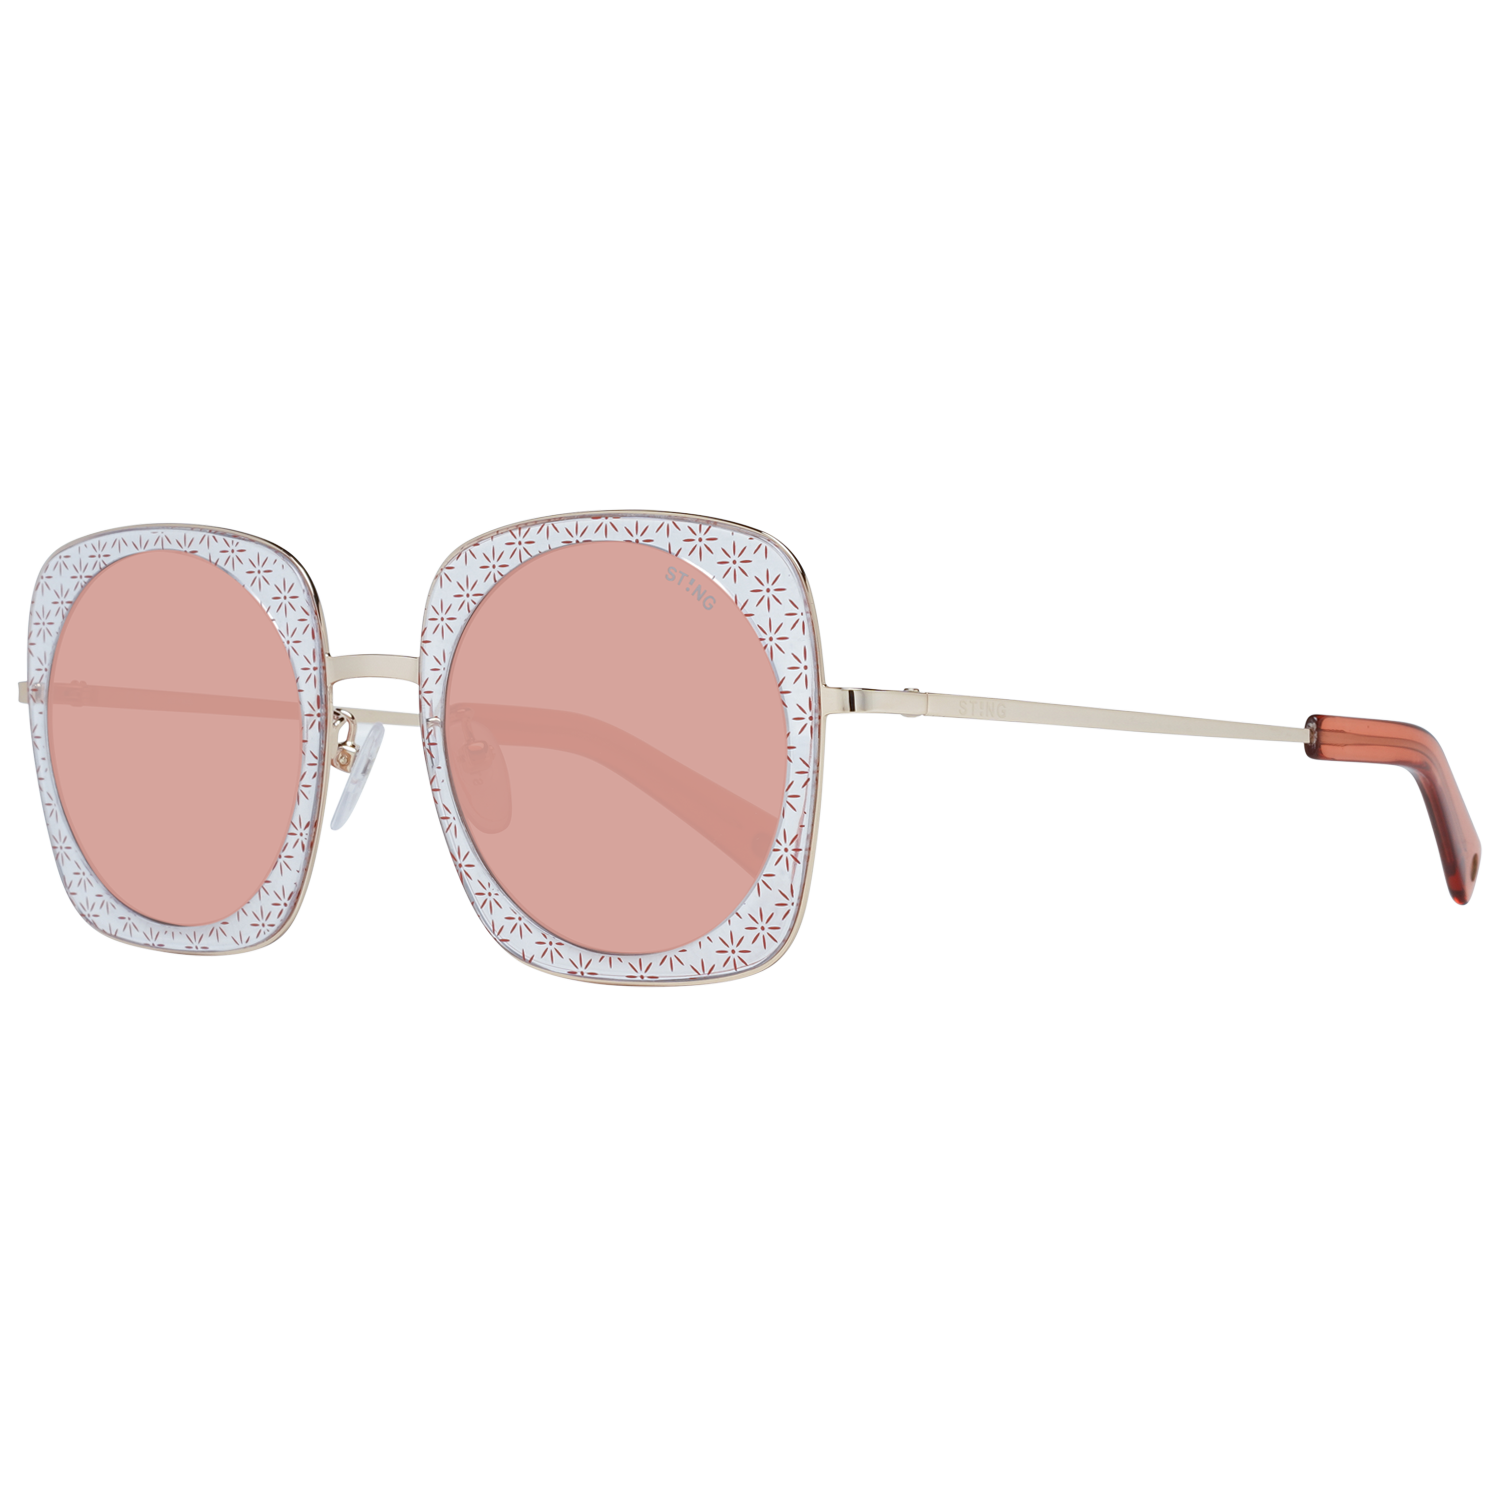 Sting Sunglasses Sting Sunglasses SST214V 300K 51 Eyeglasses Eyewear UK USA Australia 